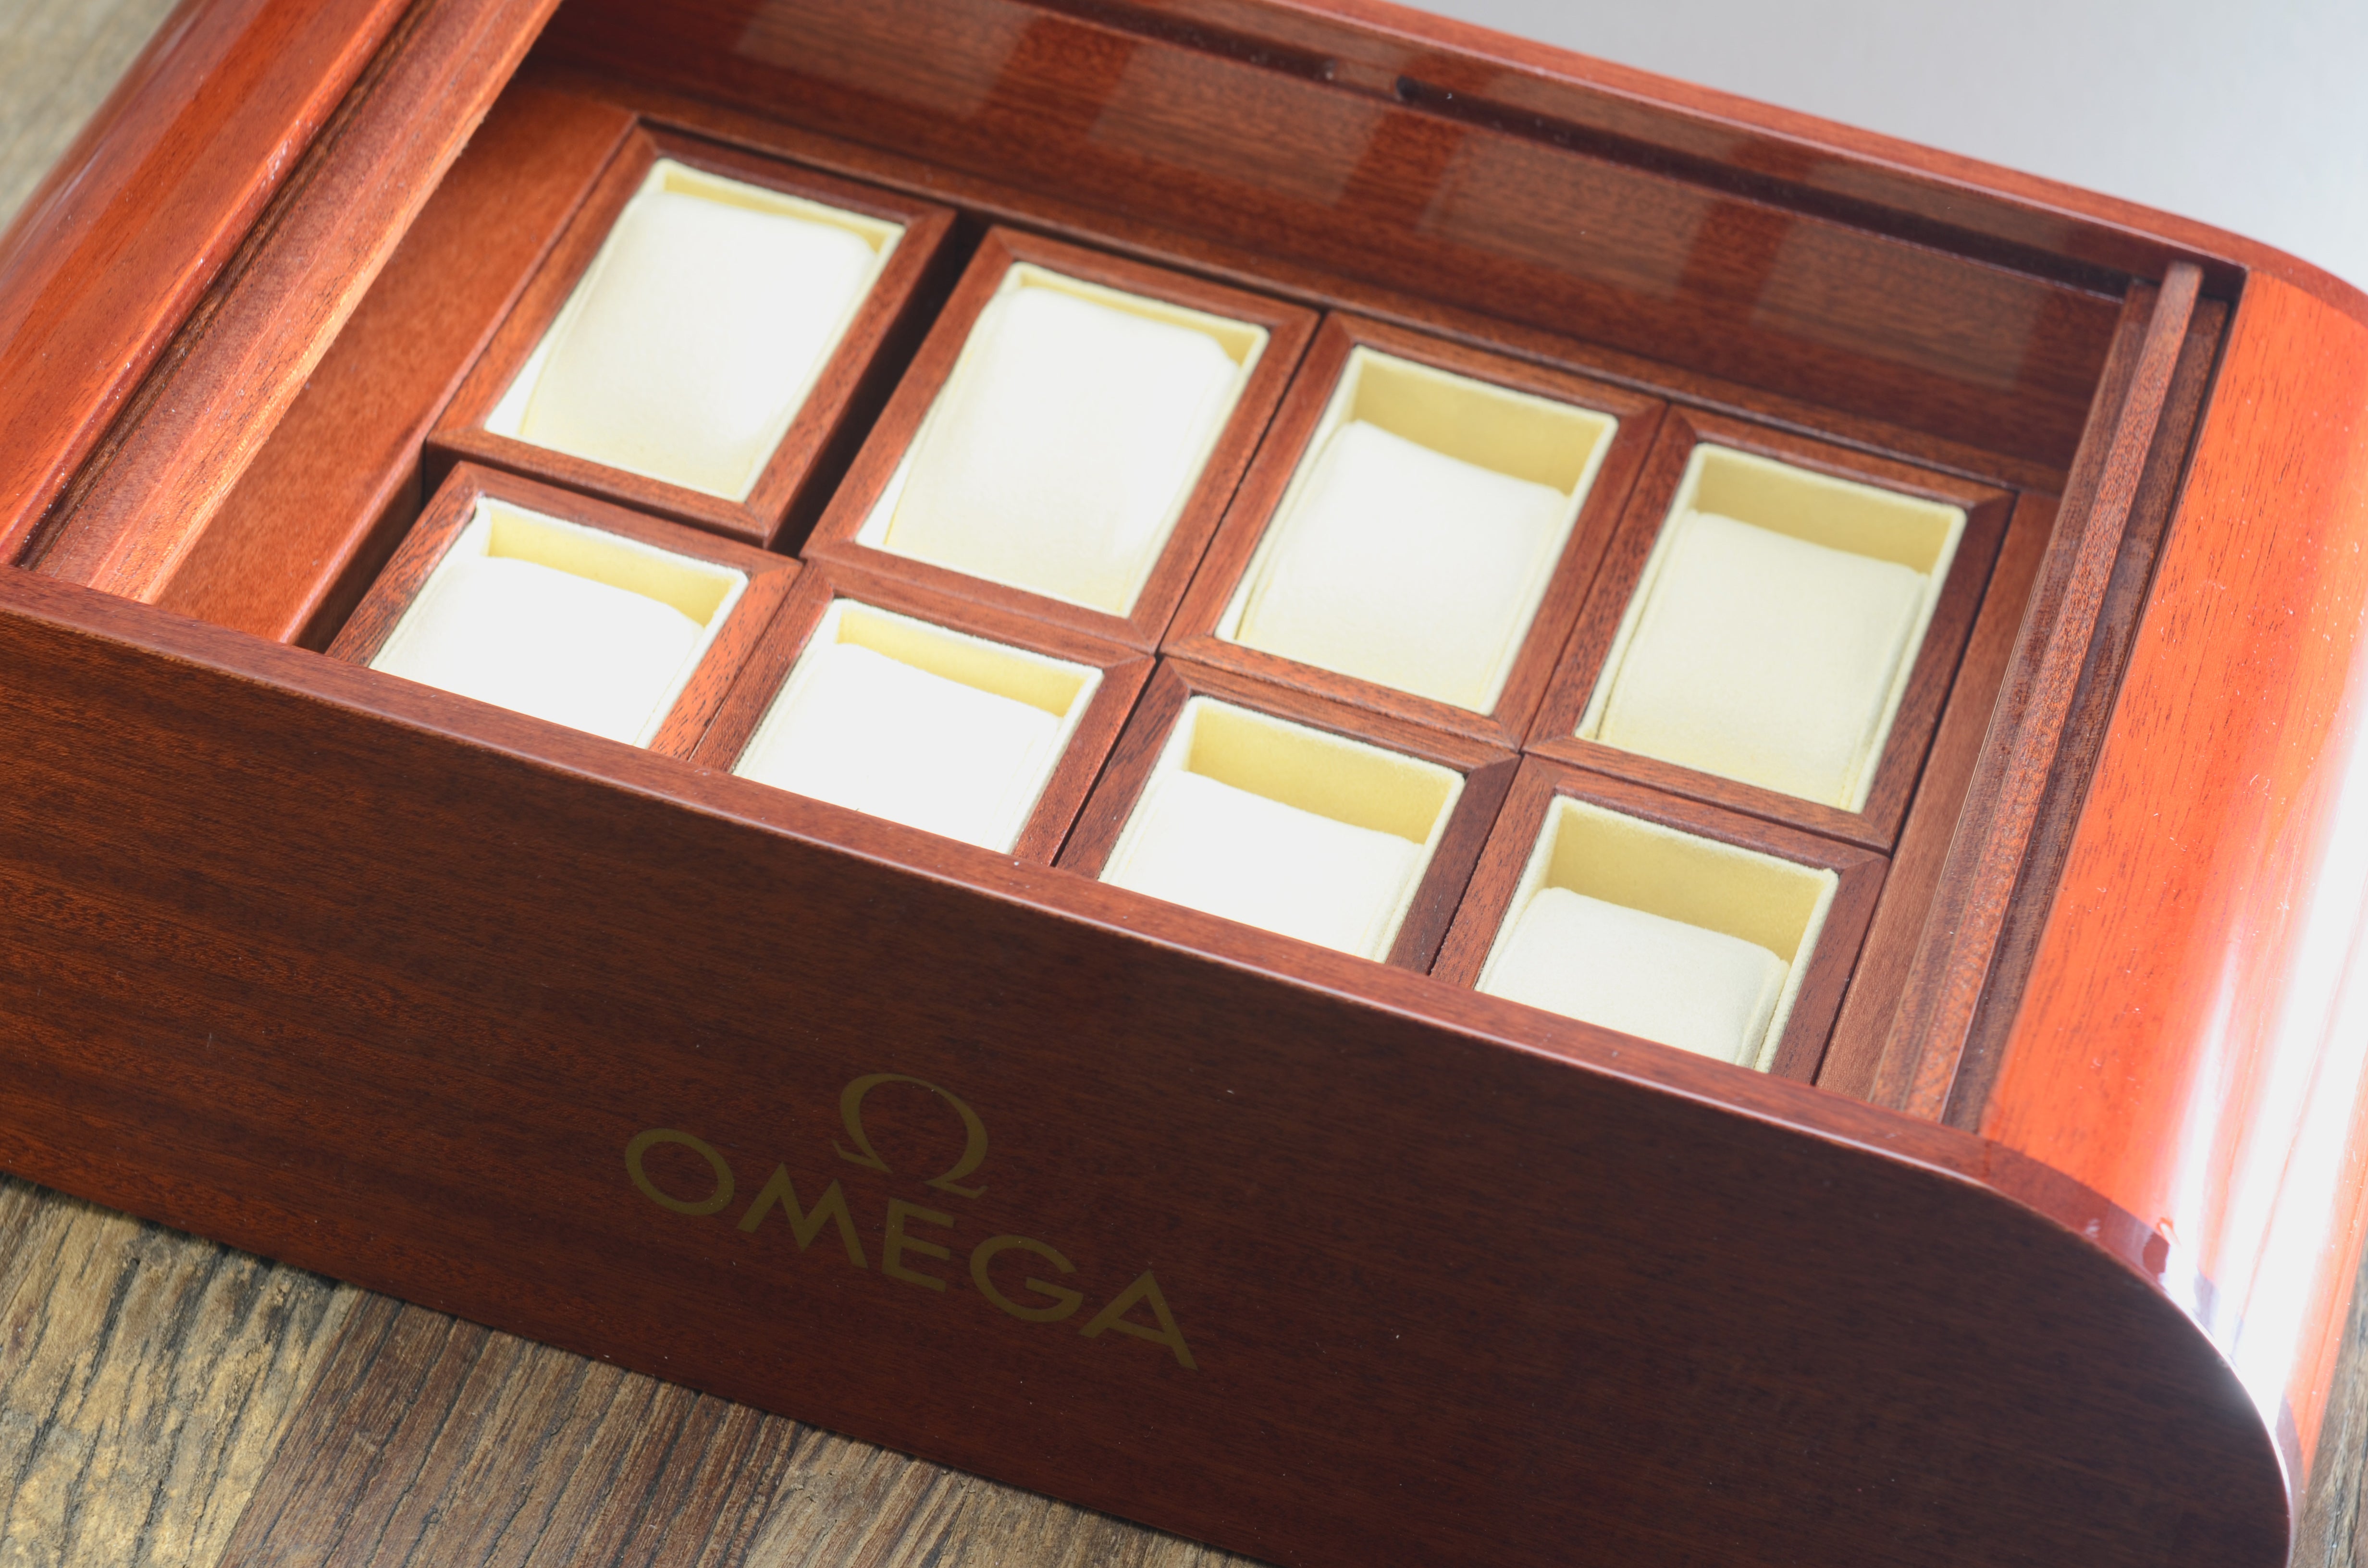 Zubehör: Omega Collector's Box Mahagoni für 8 Uhren